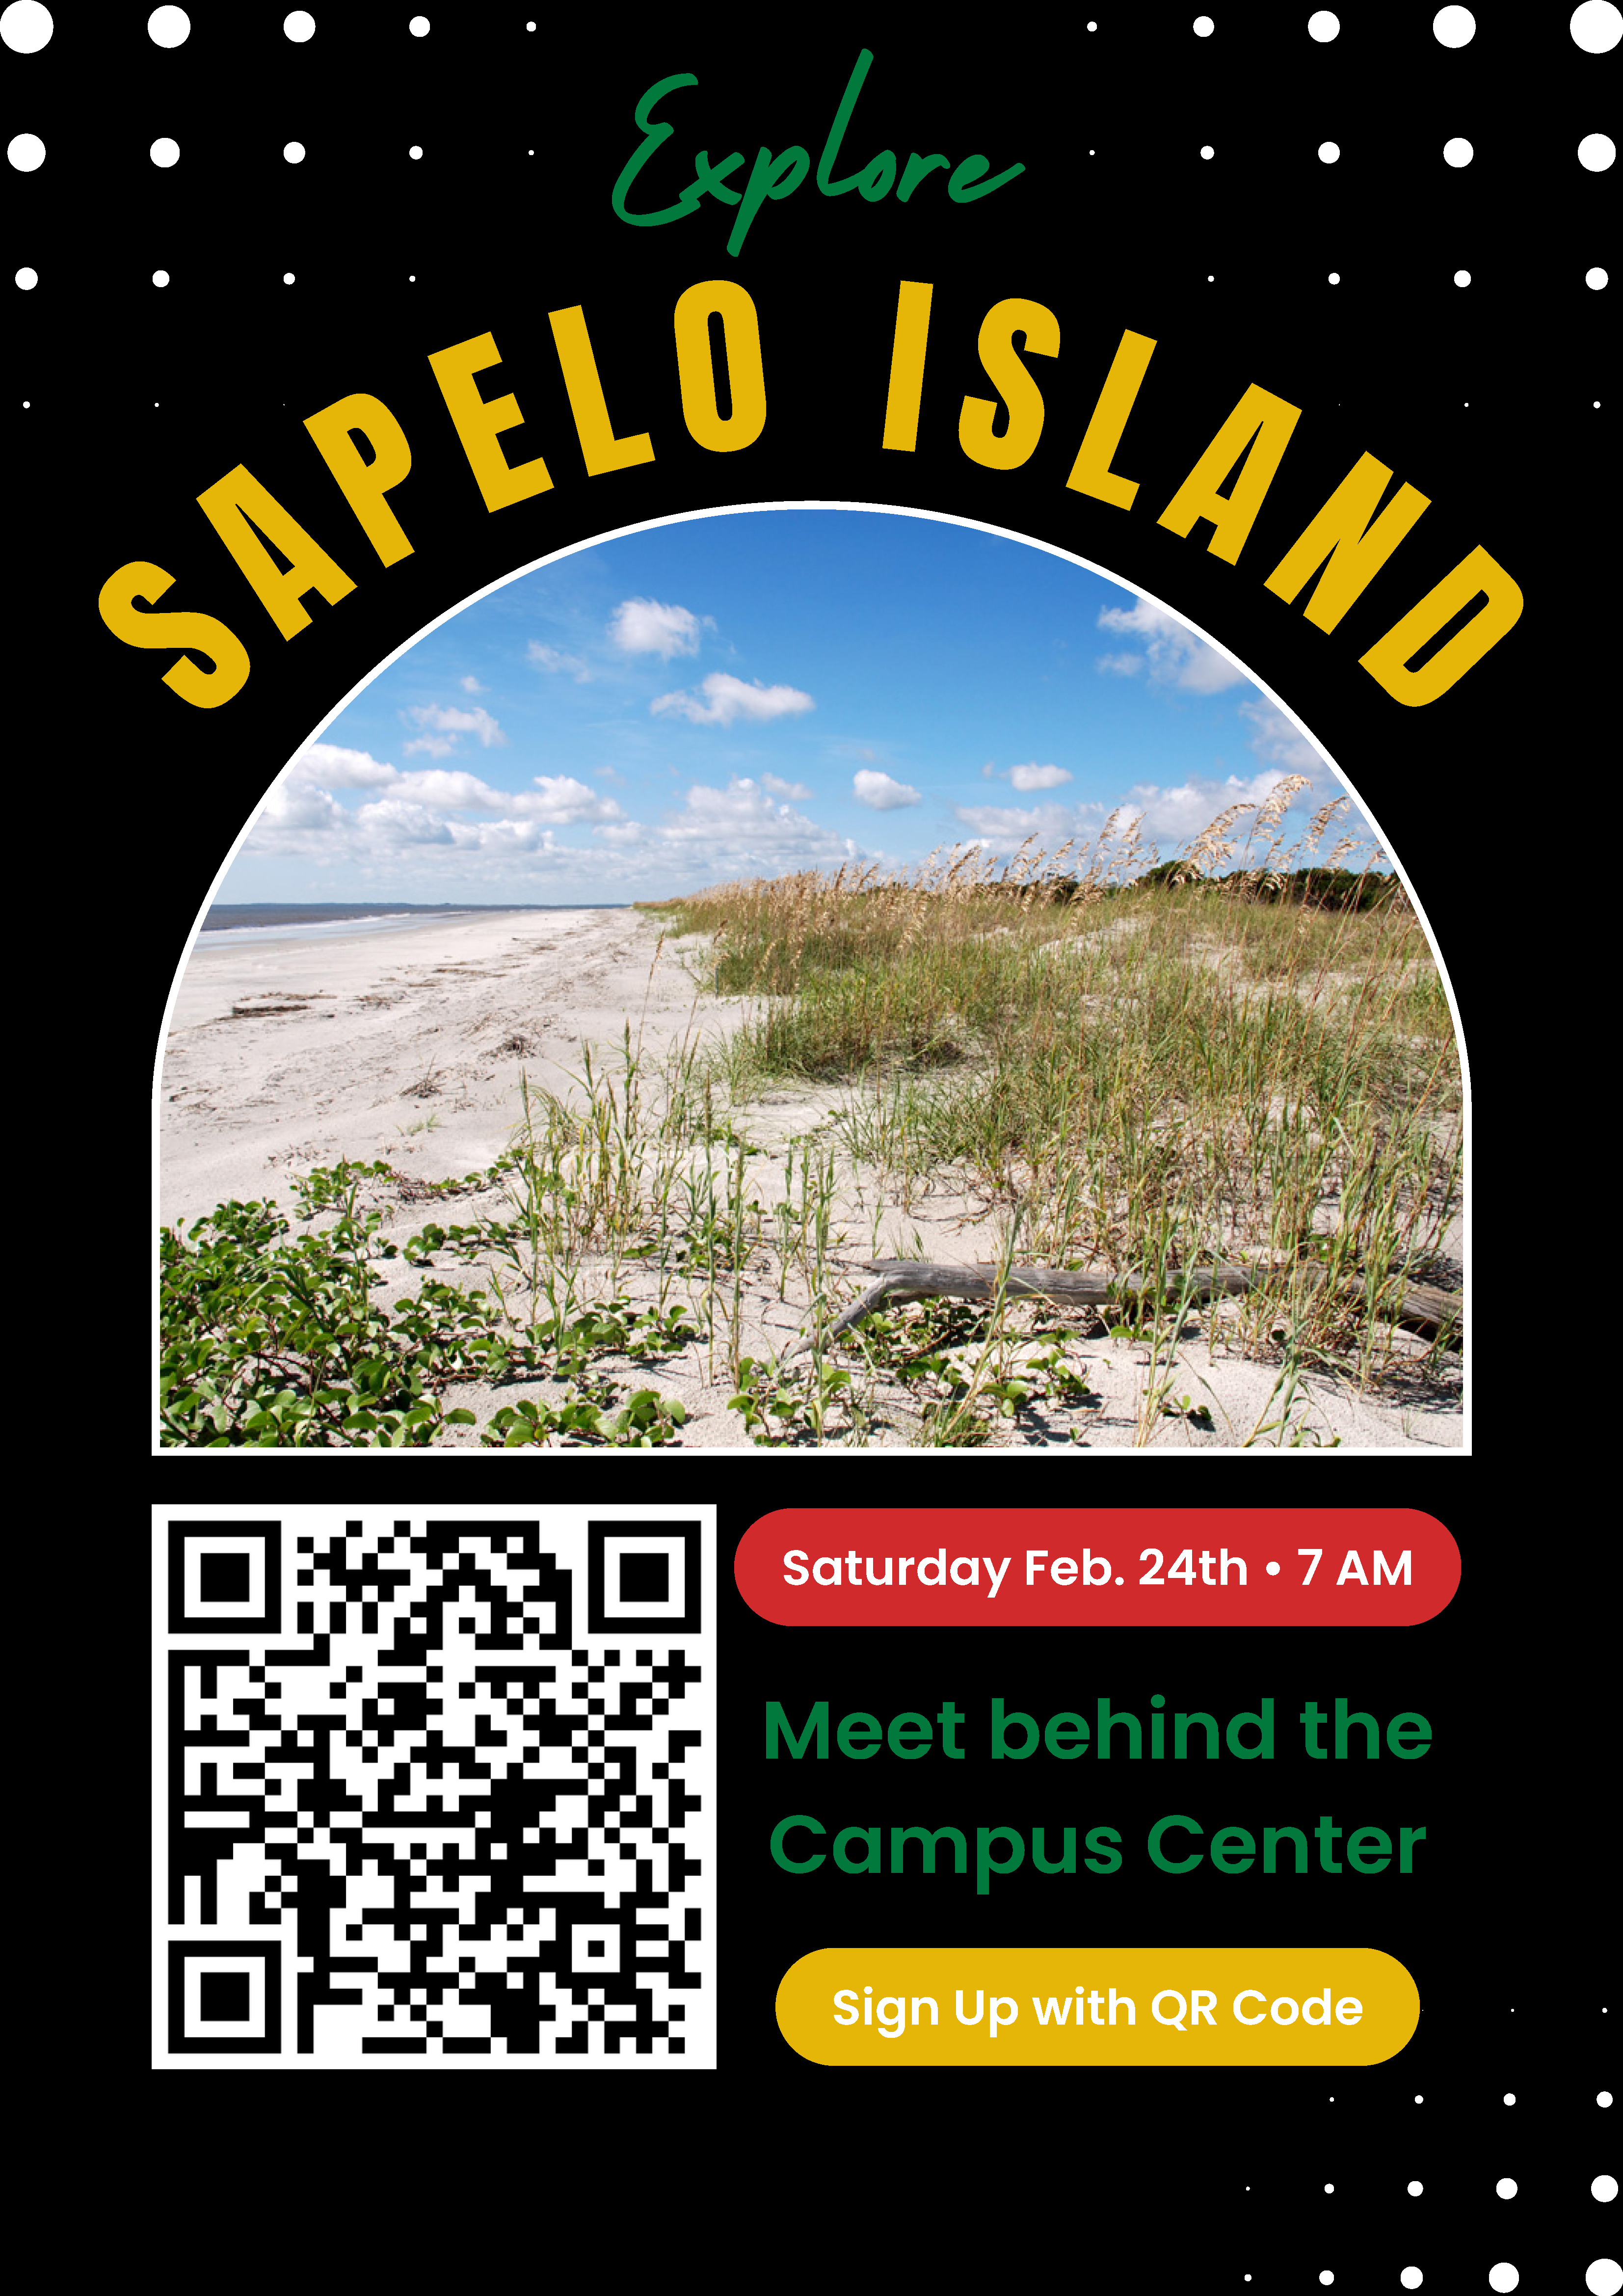 Black History Month - Explore Sapelo Island